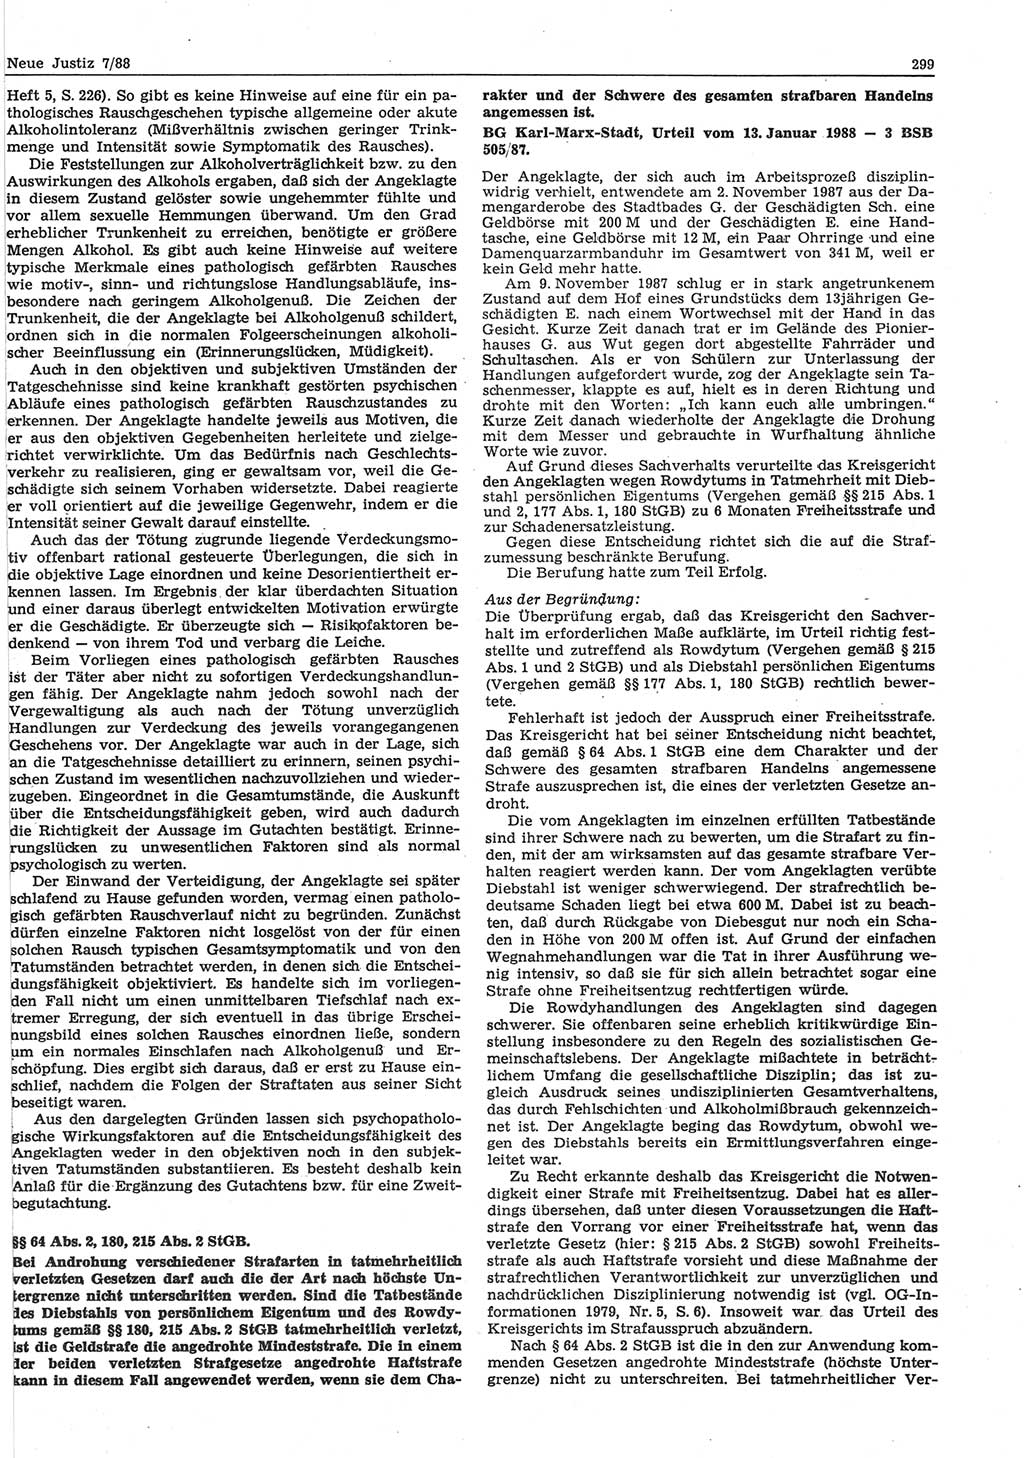 Neue Justiz (NJ), Zeitschrift für sozialistisches Recht und Gesetzlichkeit [Deutsche Demokratische Republik (DDR)], 42. Jahrgang 1988, Seite 299 (NJ DDR 1988, S. 299)